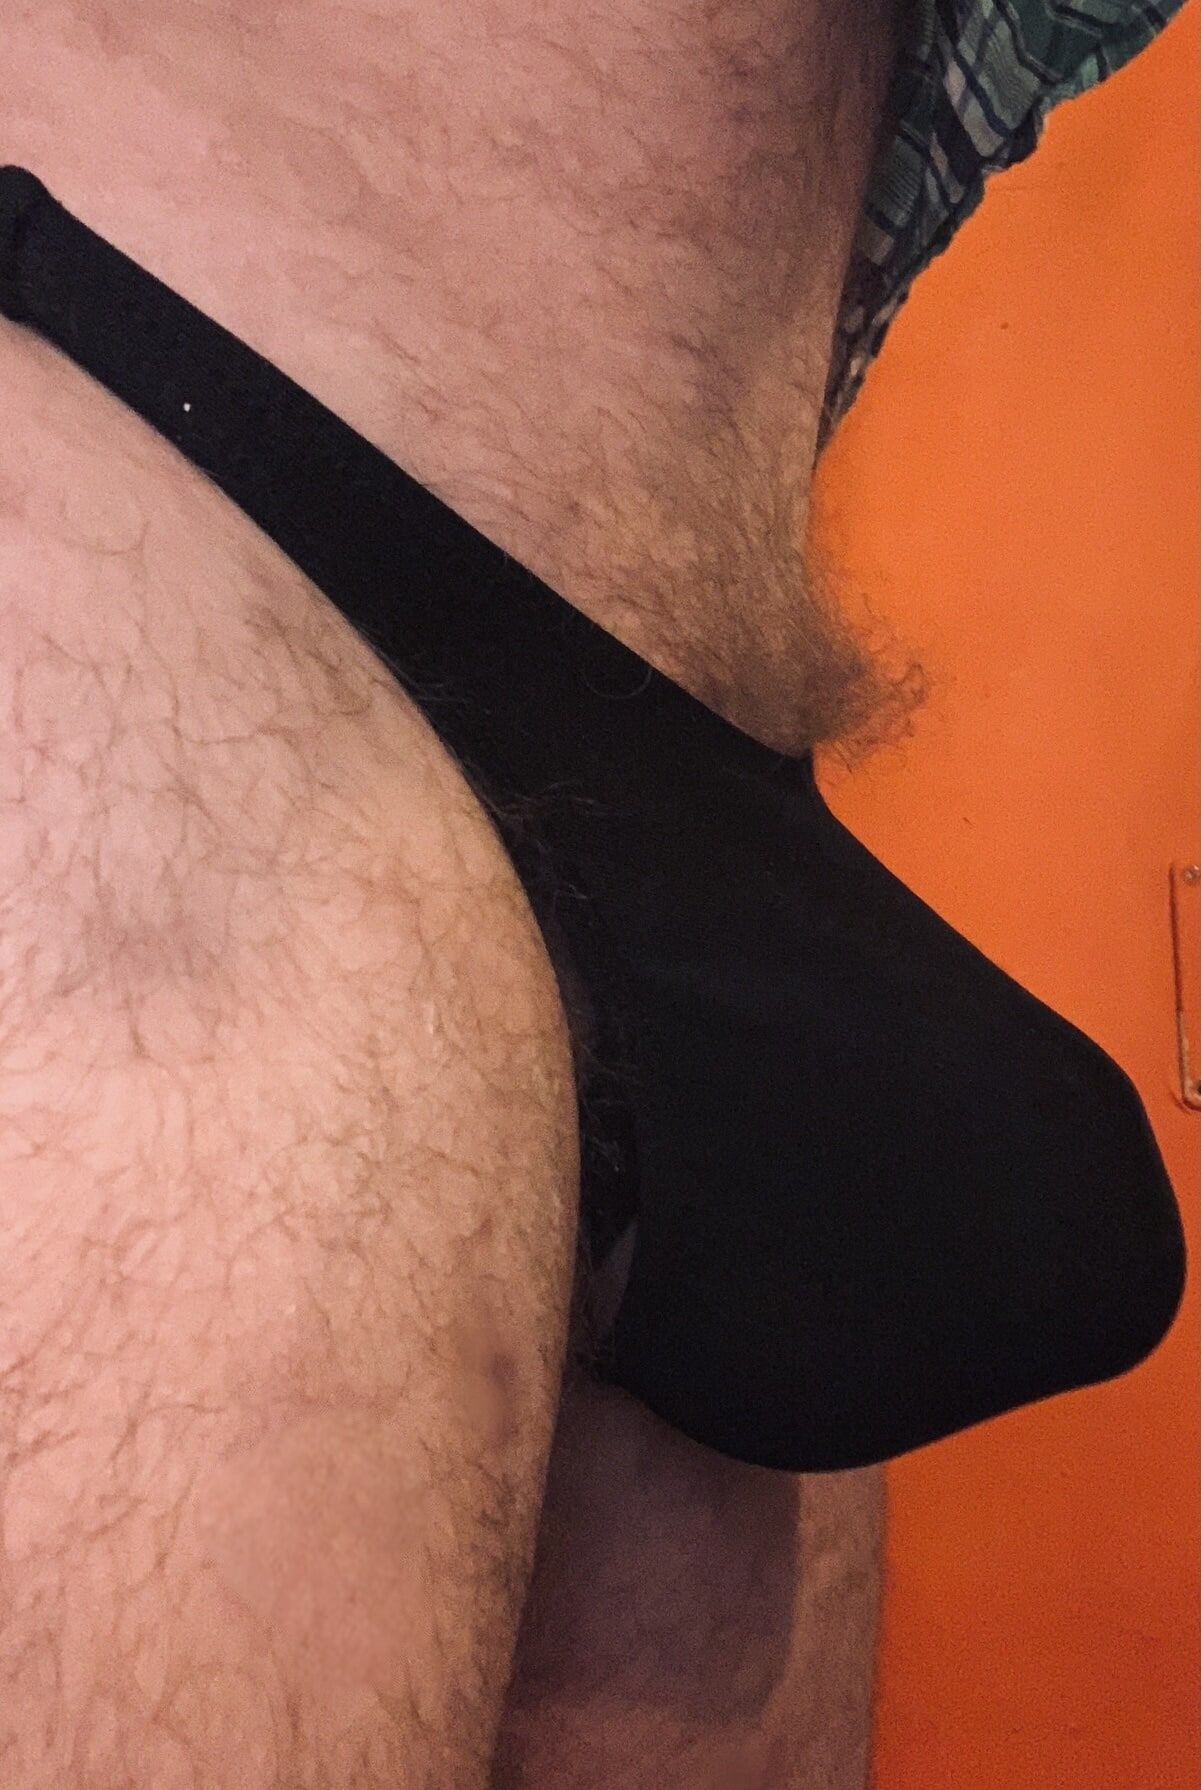 My bulge #17